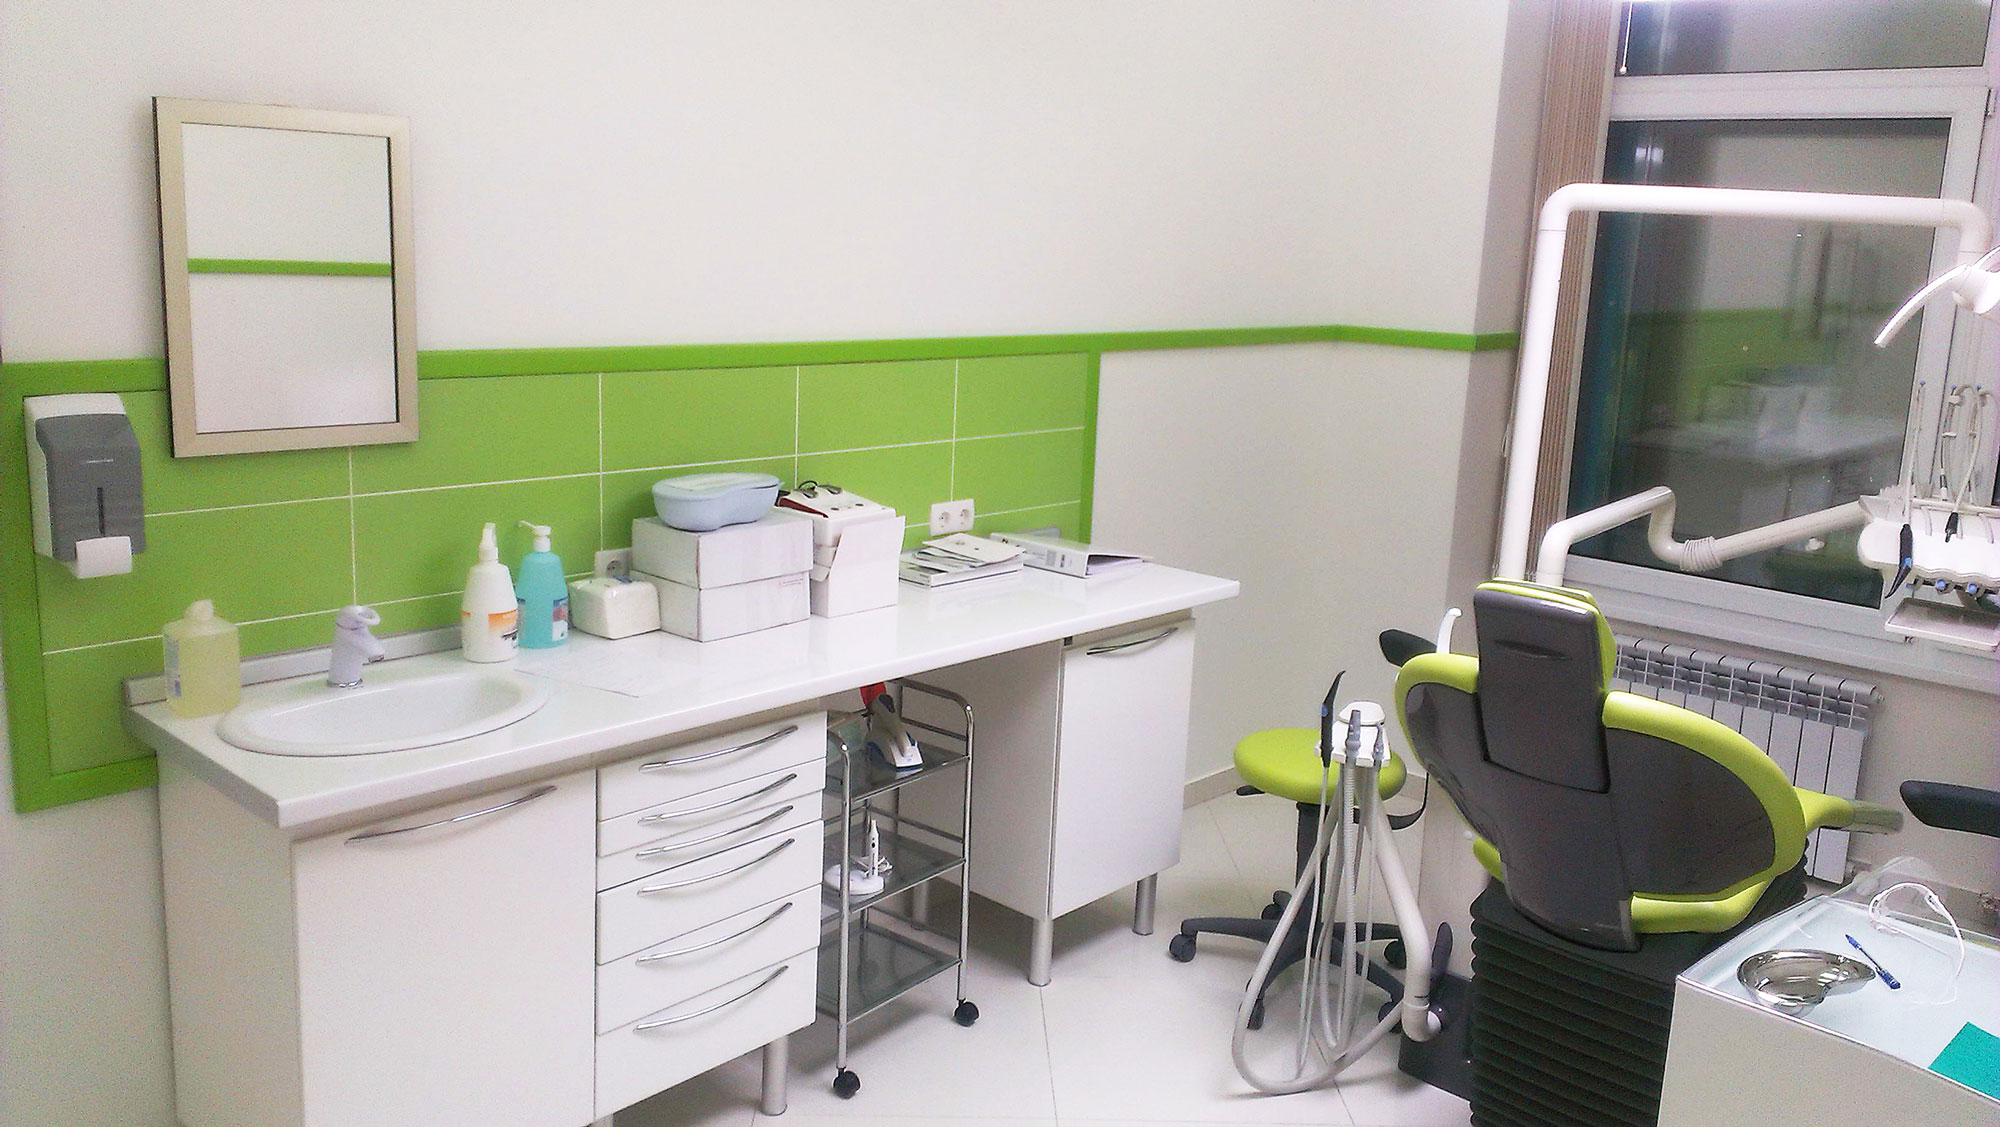 Стоматологическая клиника «Dent-Lux», г. Астана, Казахстан